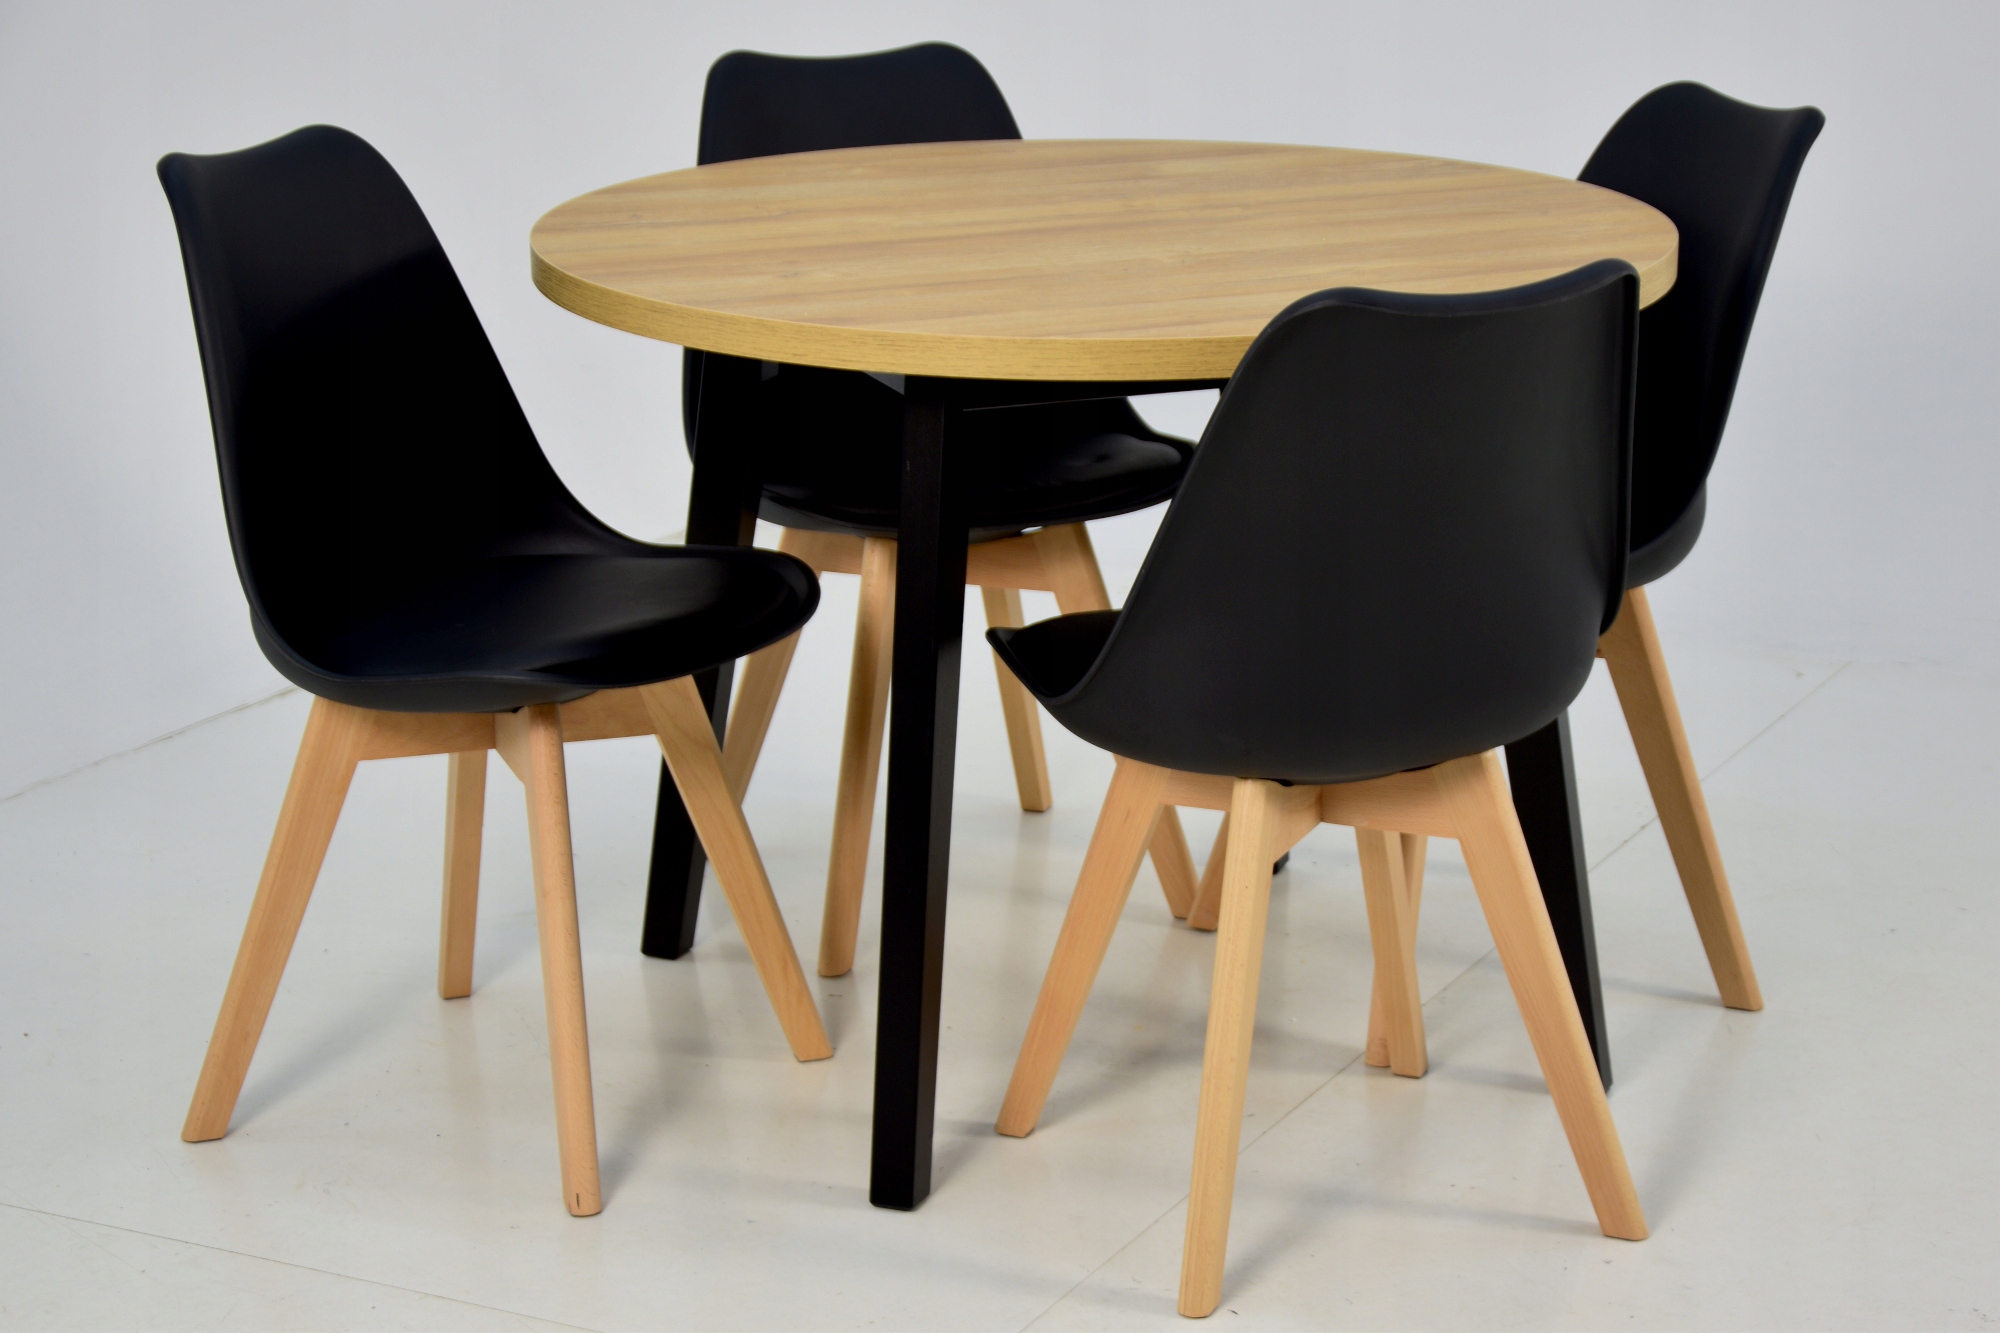 4 скандинавских стула + круглый стол 100 см Количество элементов в наборе 5